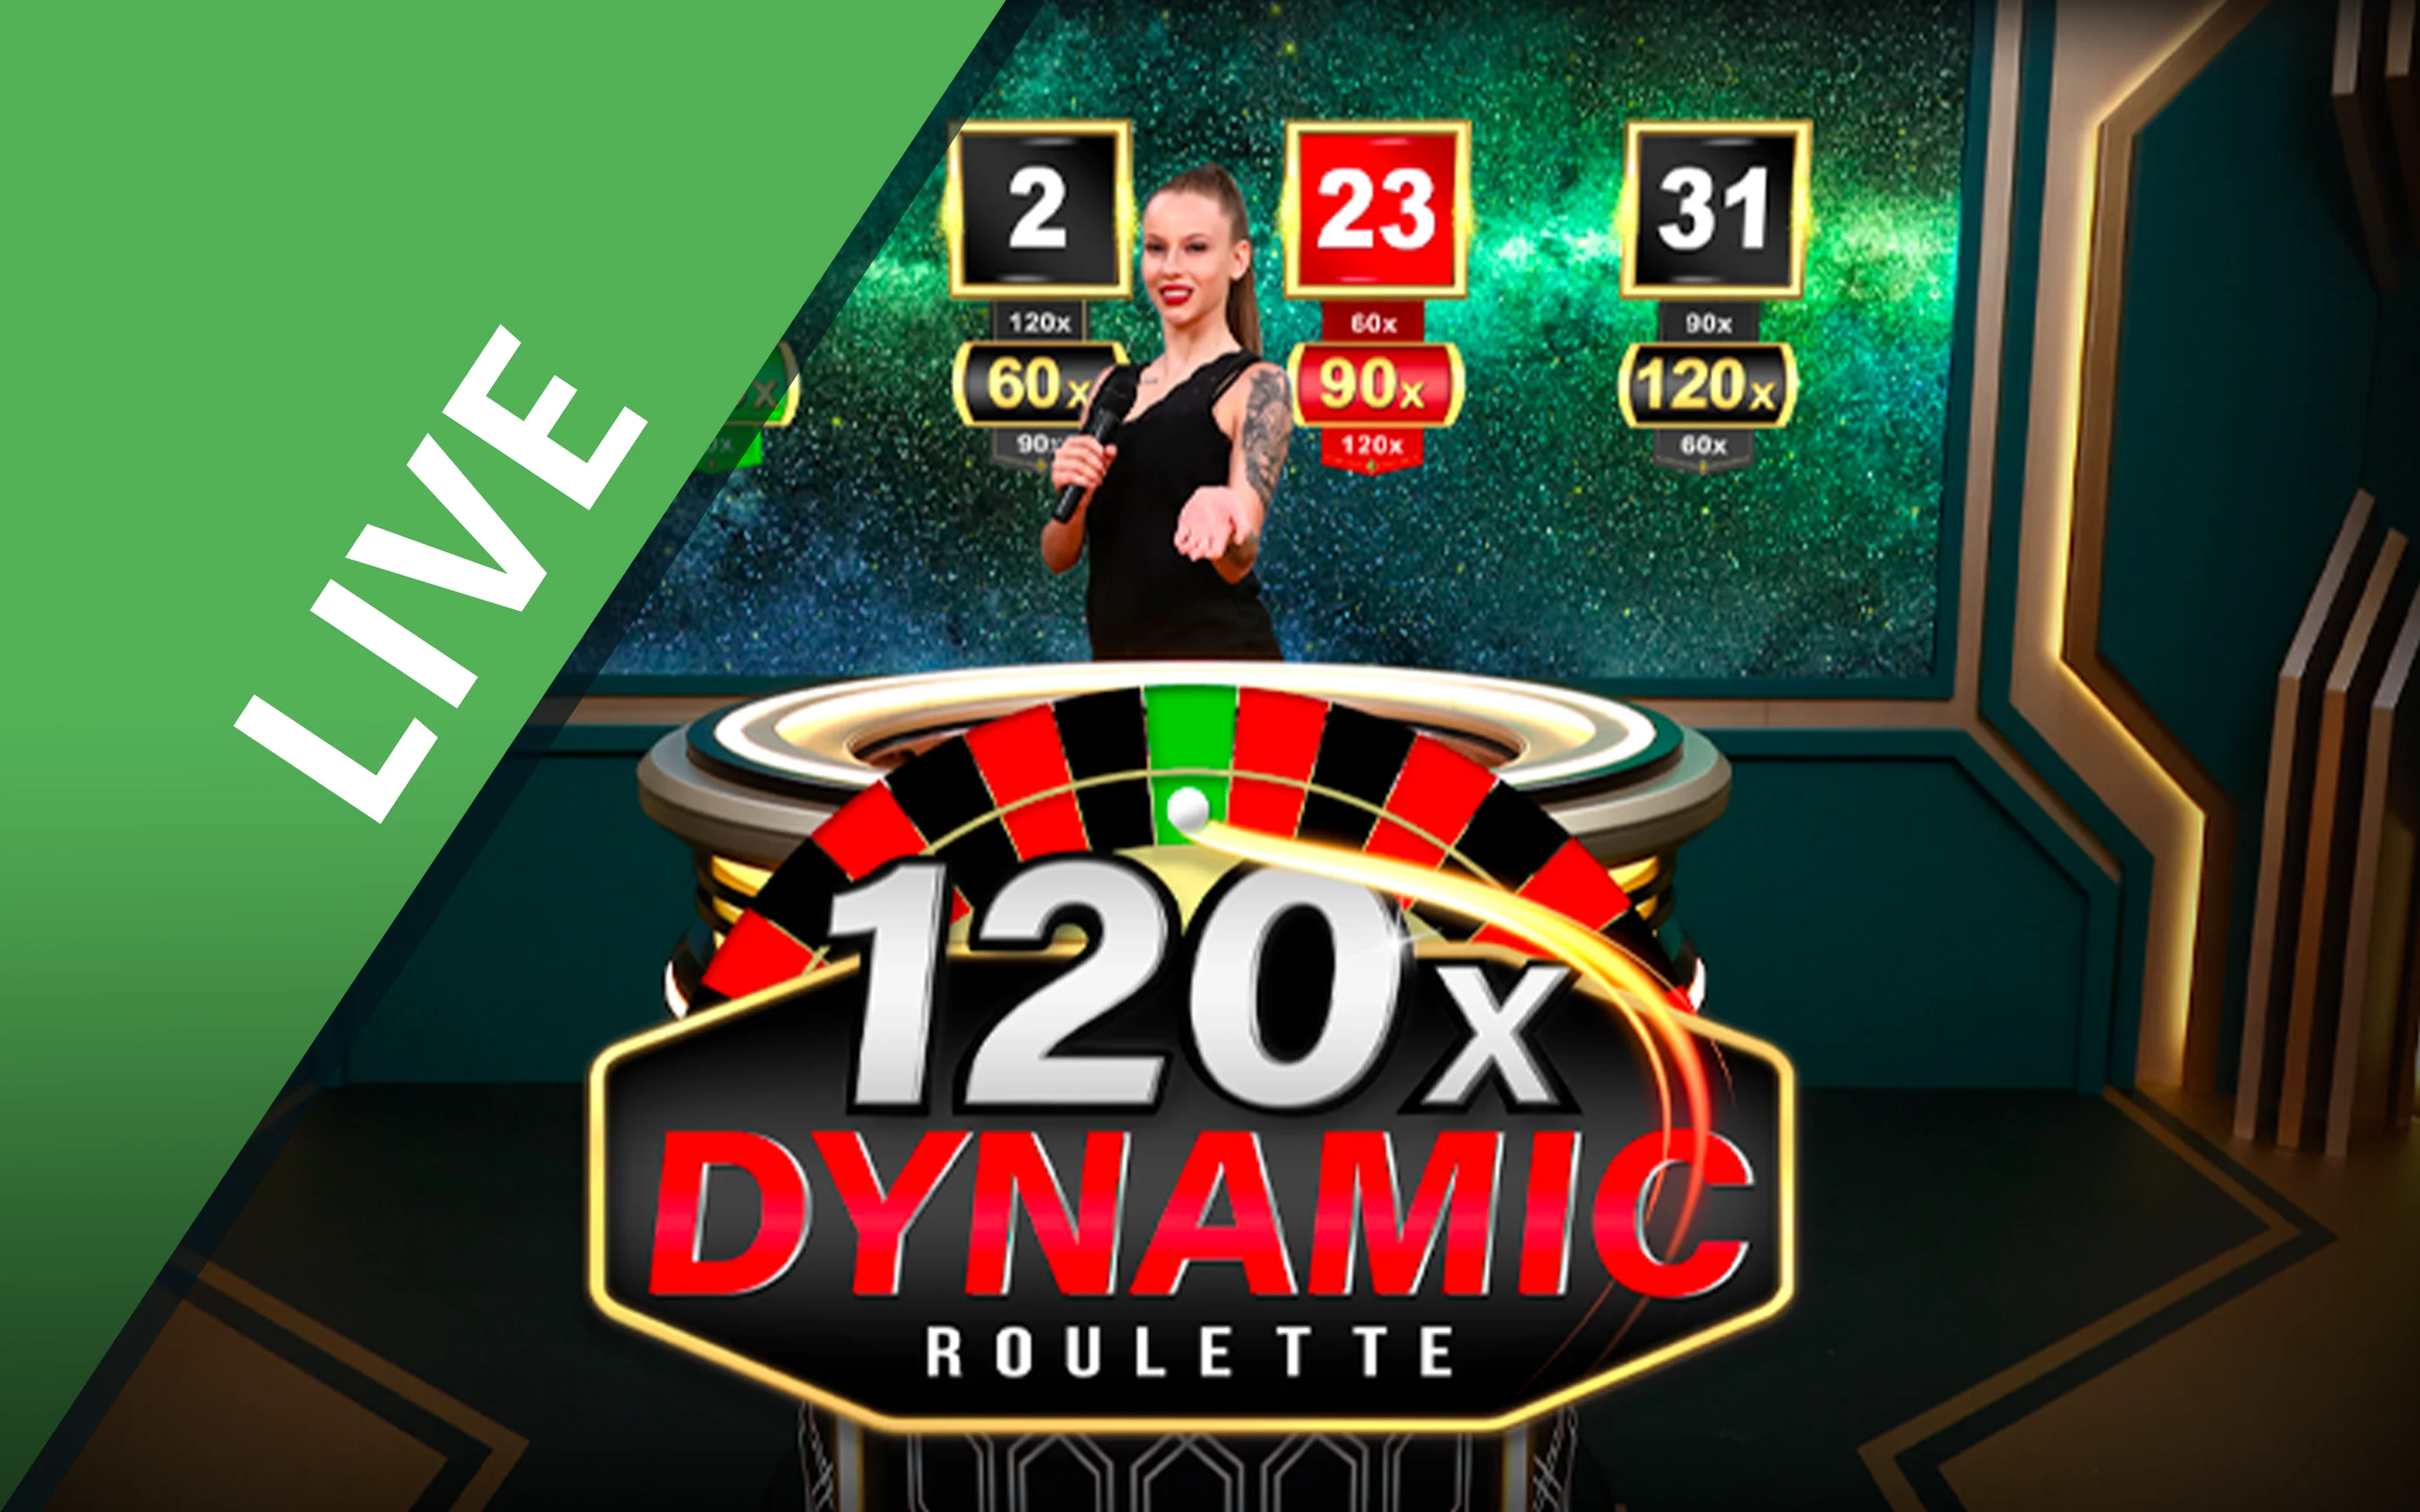 Spil Dynamic Roulette 120x på Starcasino.be online kasino
